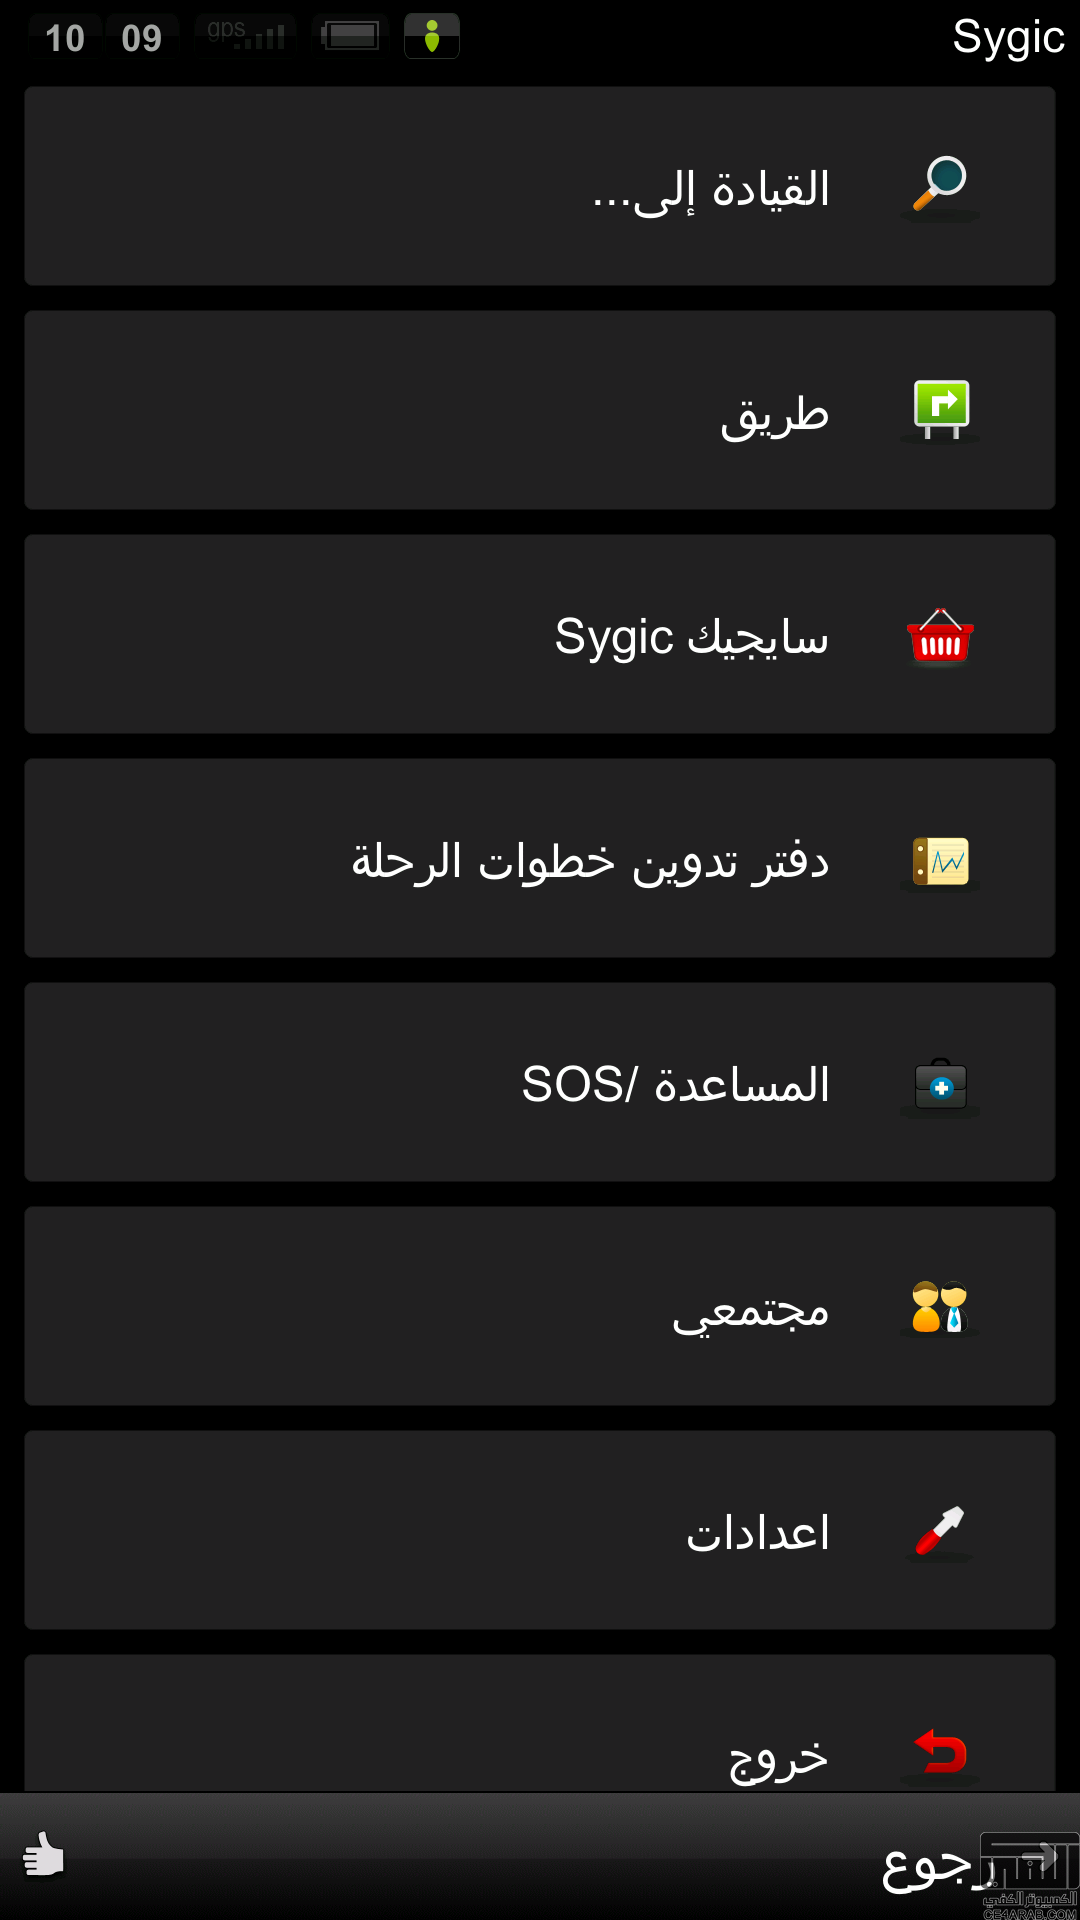 برنامج الملاحه sygic 13.3.2 رابط مباشر مع خرائط الخليج